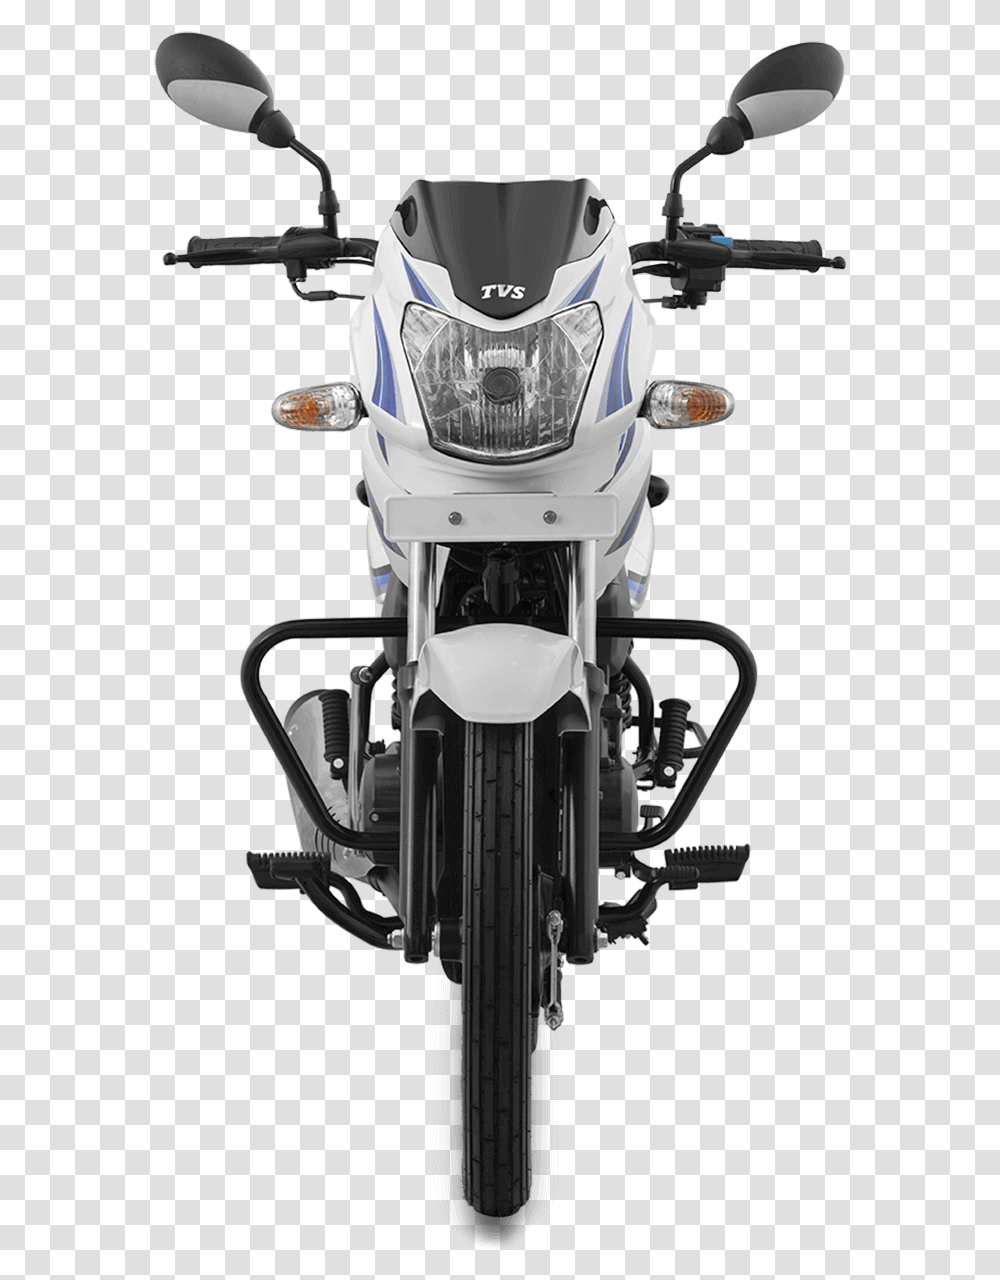 Bajaj Pulsar 125 Front, Light, Motorcycle, Vehicle, Transportation Transparent Png